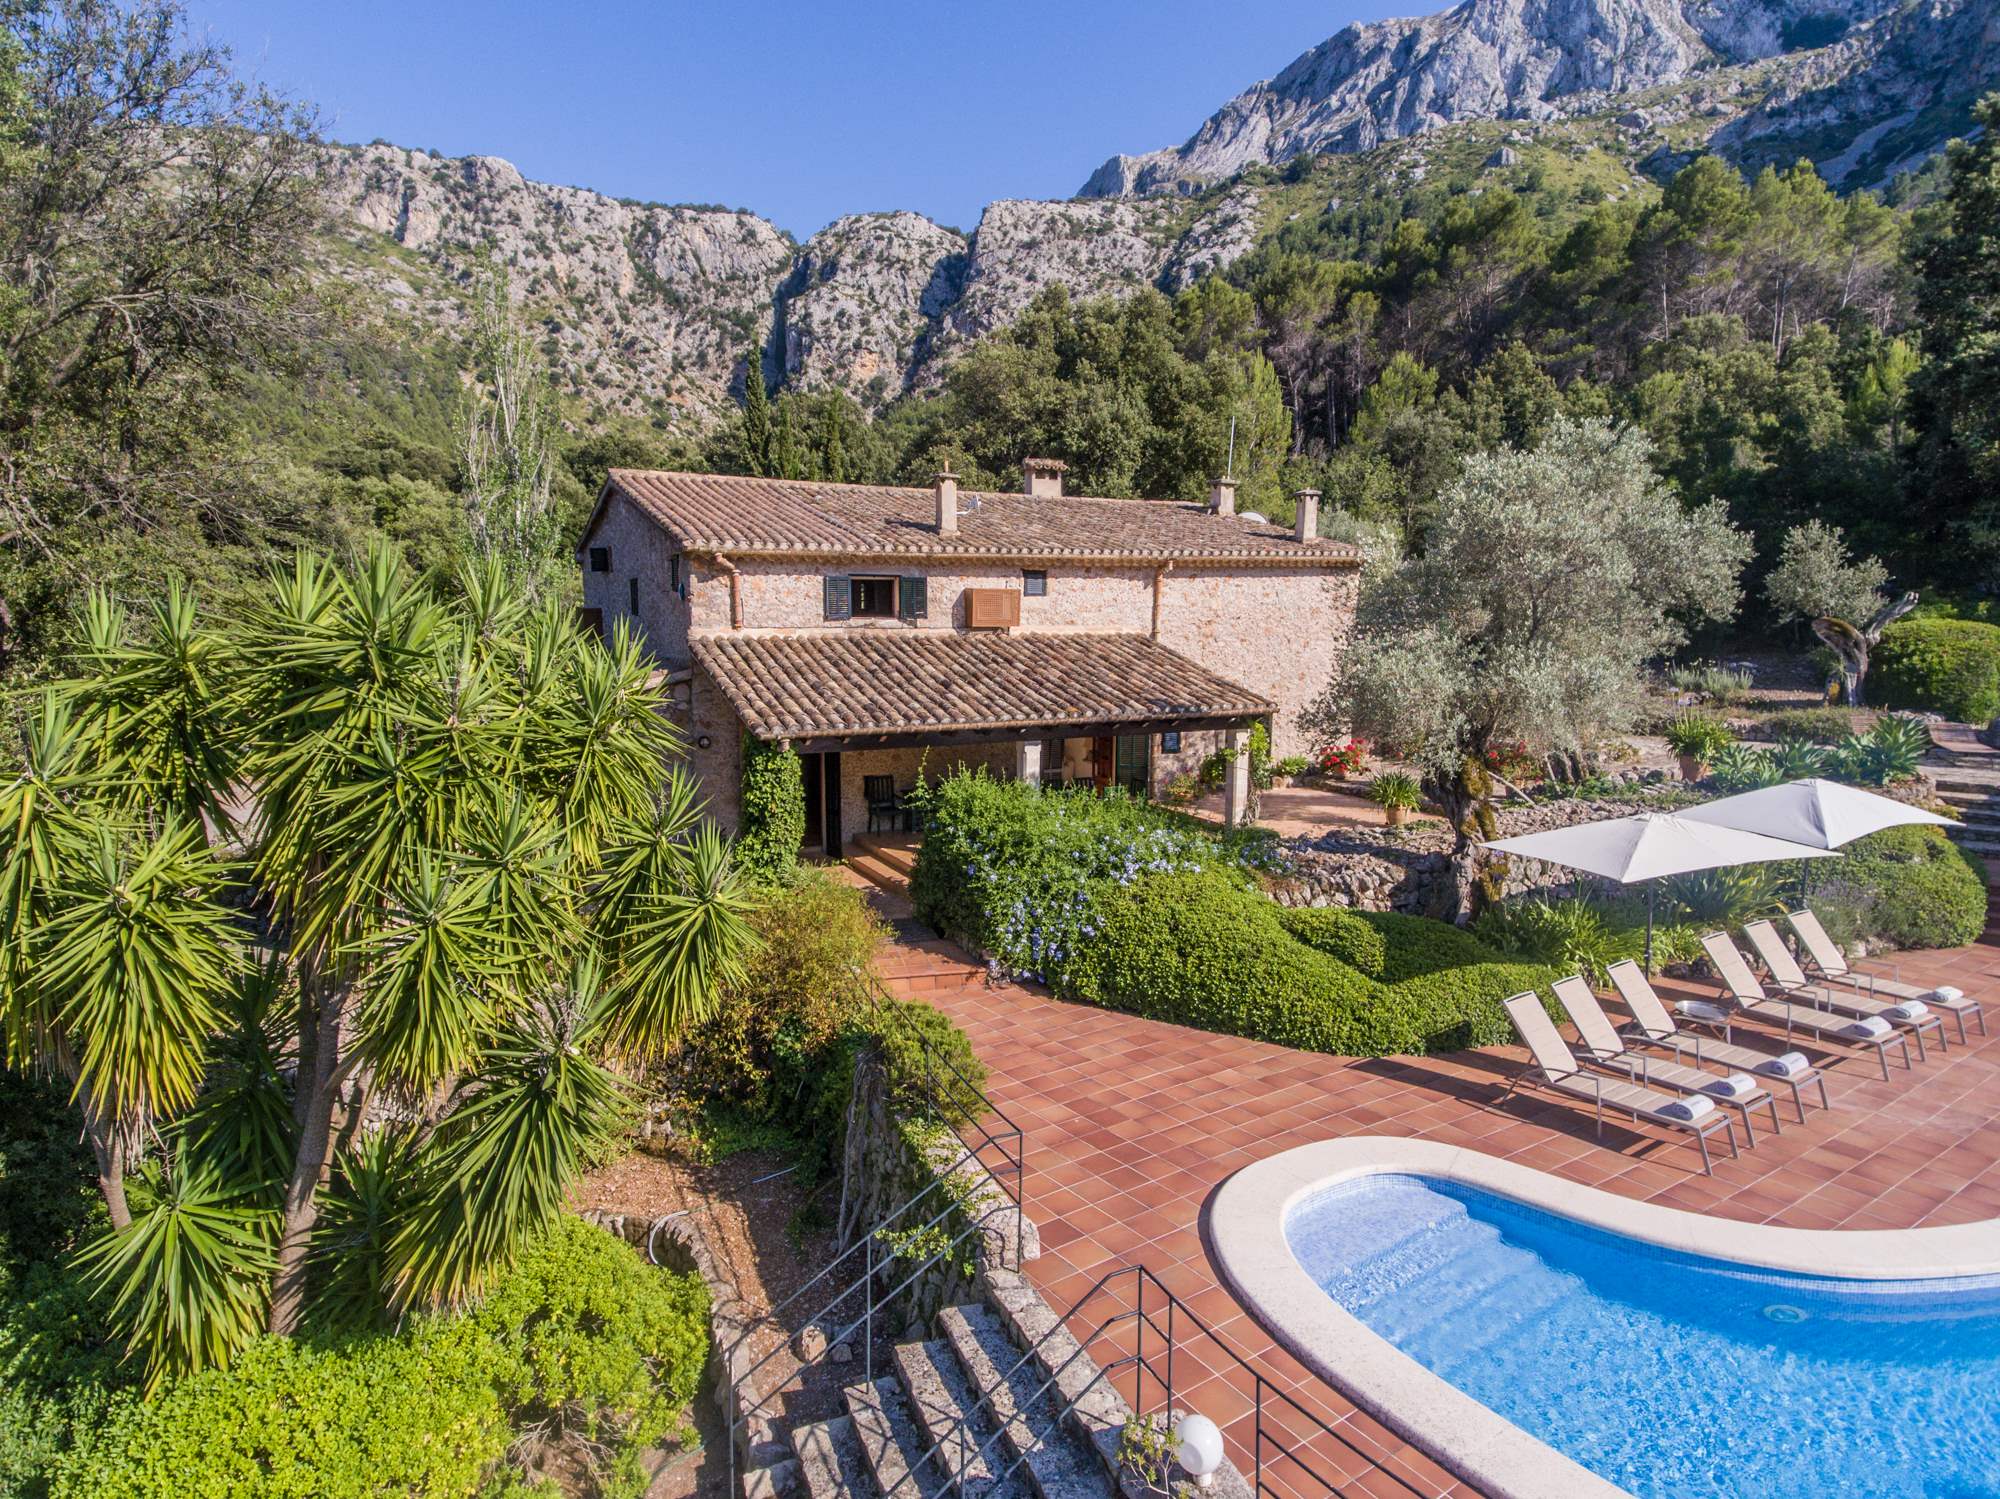 Es Clotal, 4 bedroom, 4 bedroom villa in Pollensa & Puerto Pollensa, Majorca Photo #1